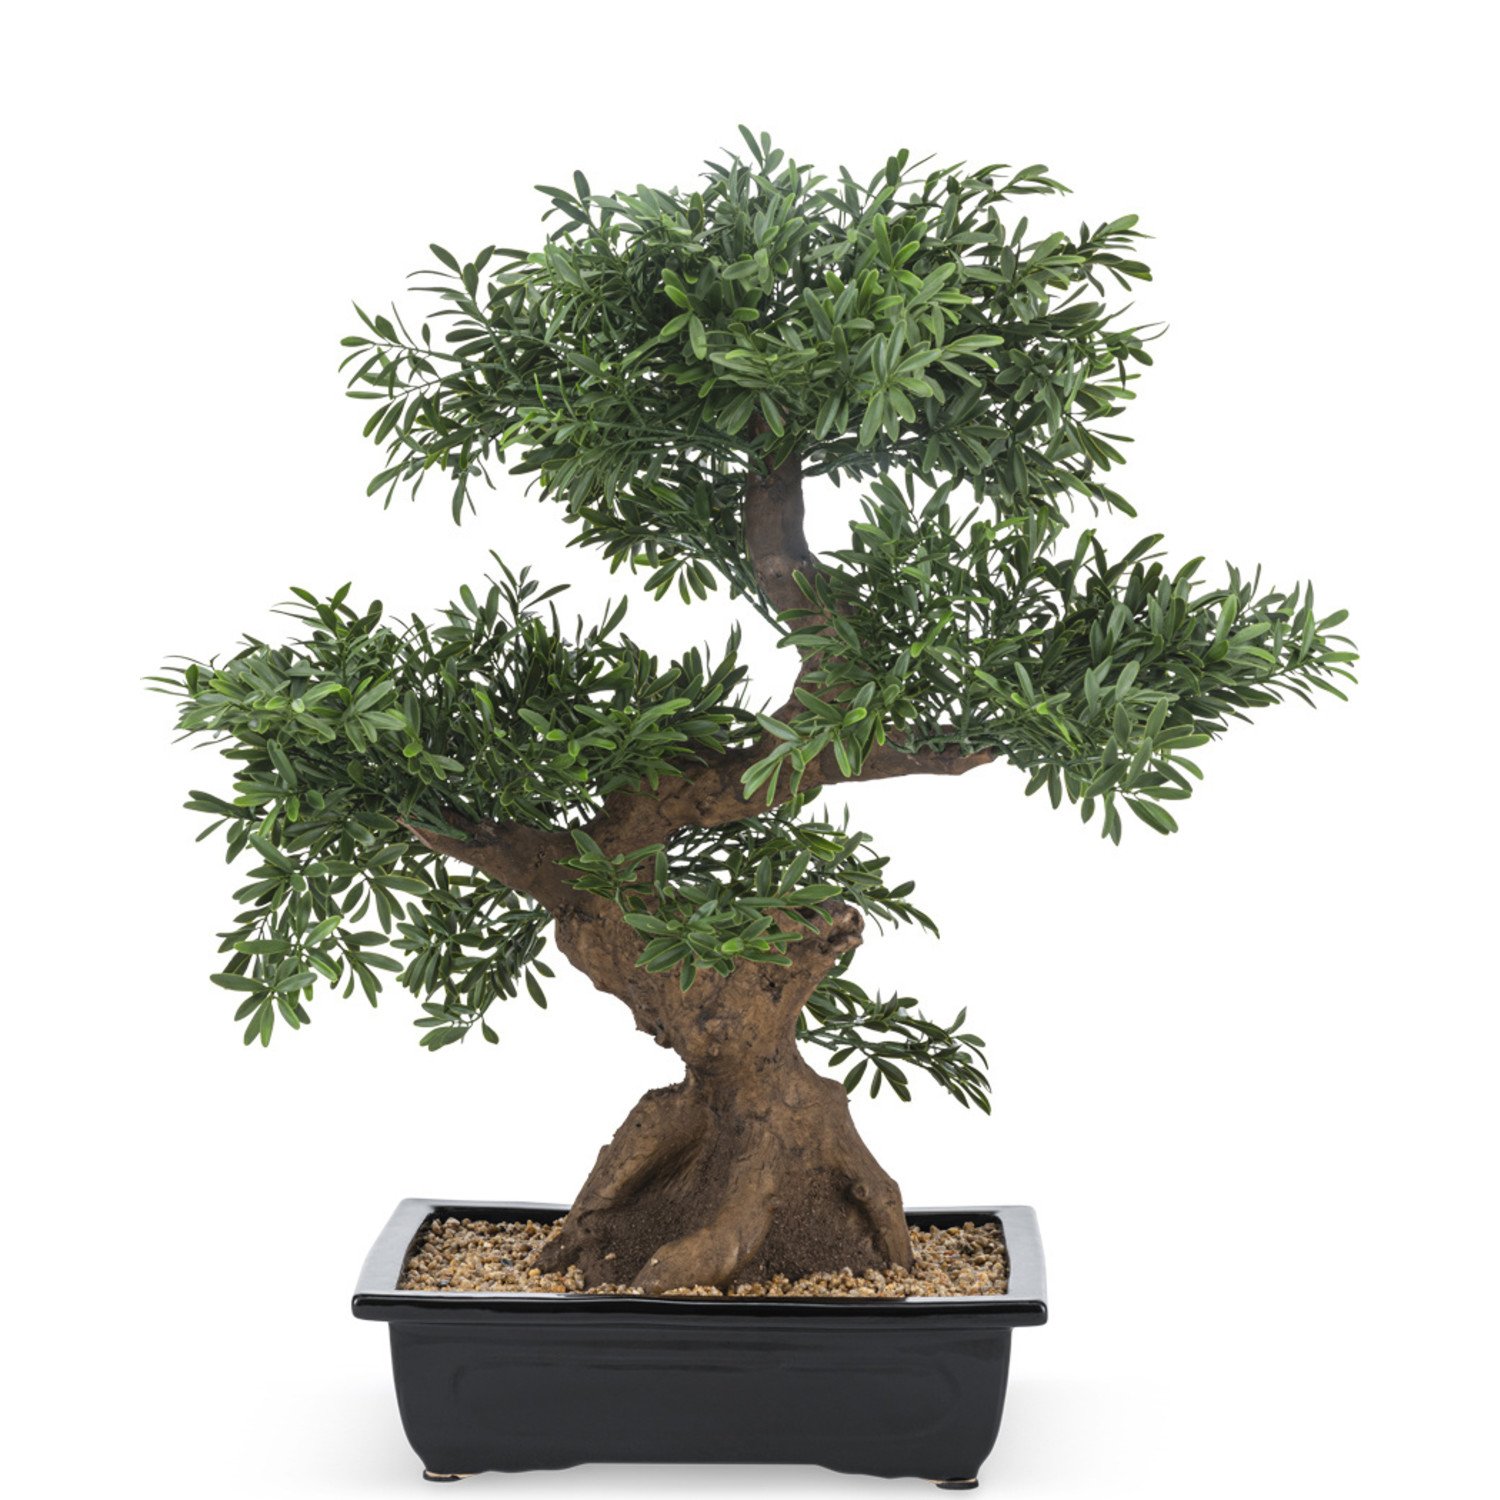 Easyplants Bonsaibaum 70cm - Künstlicher